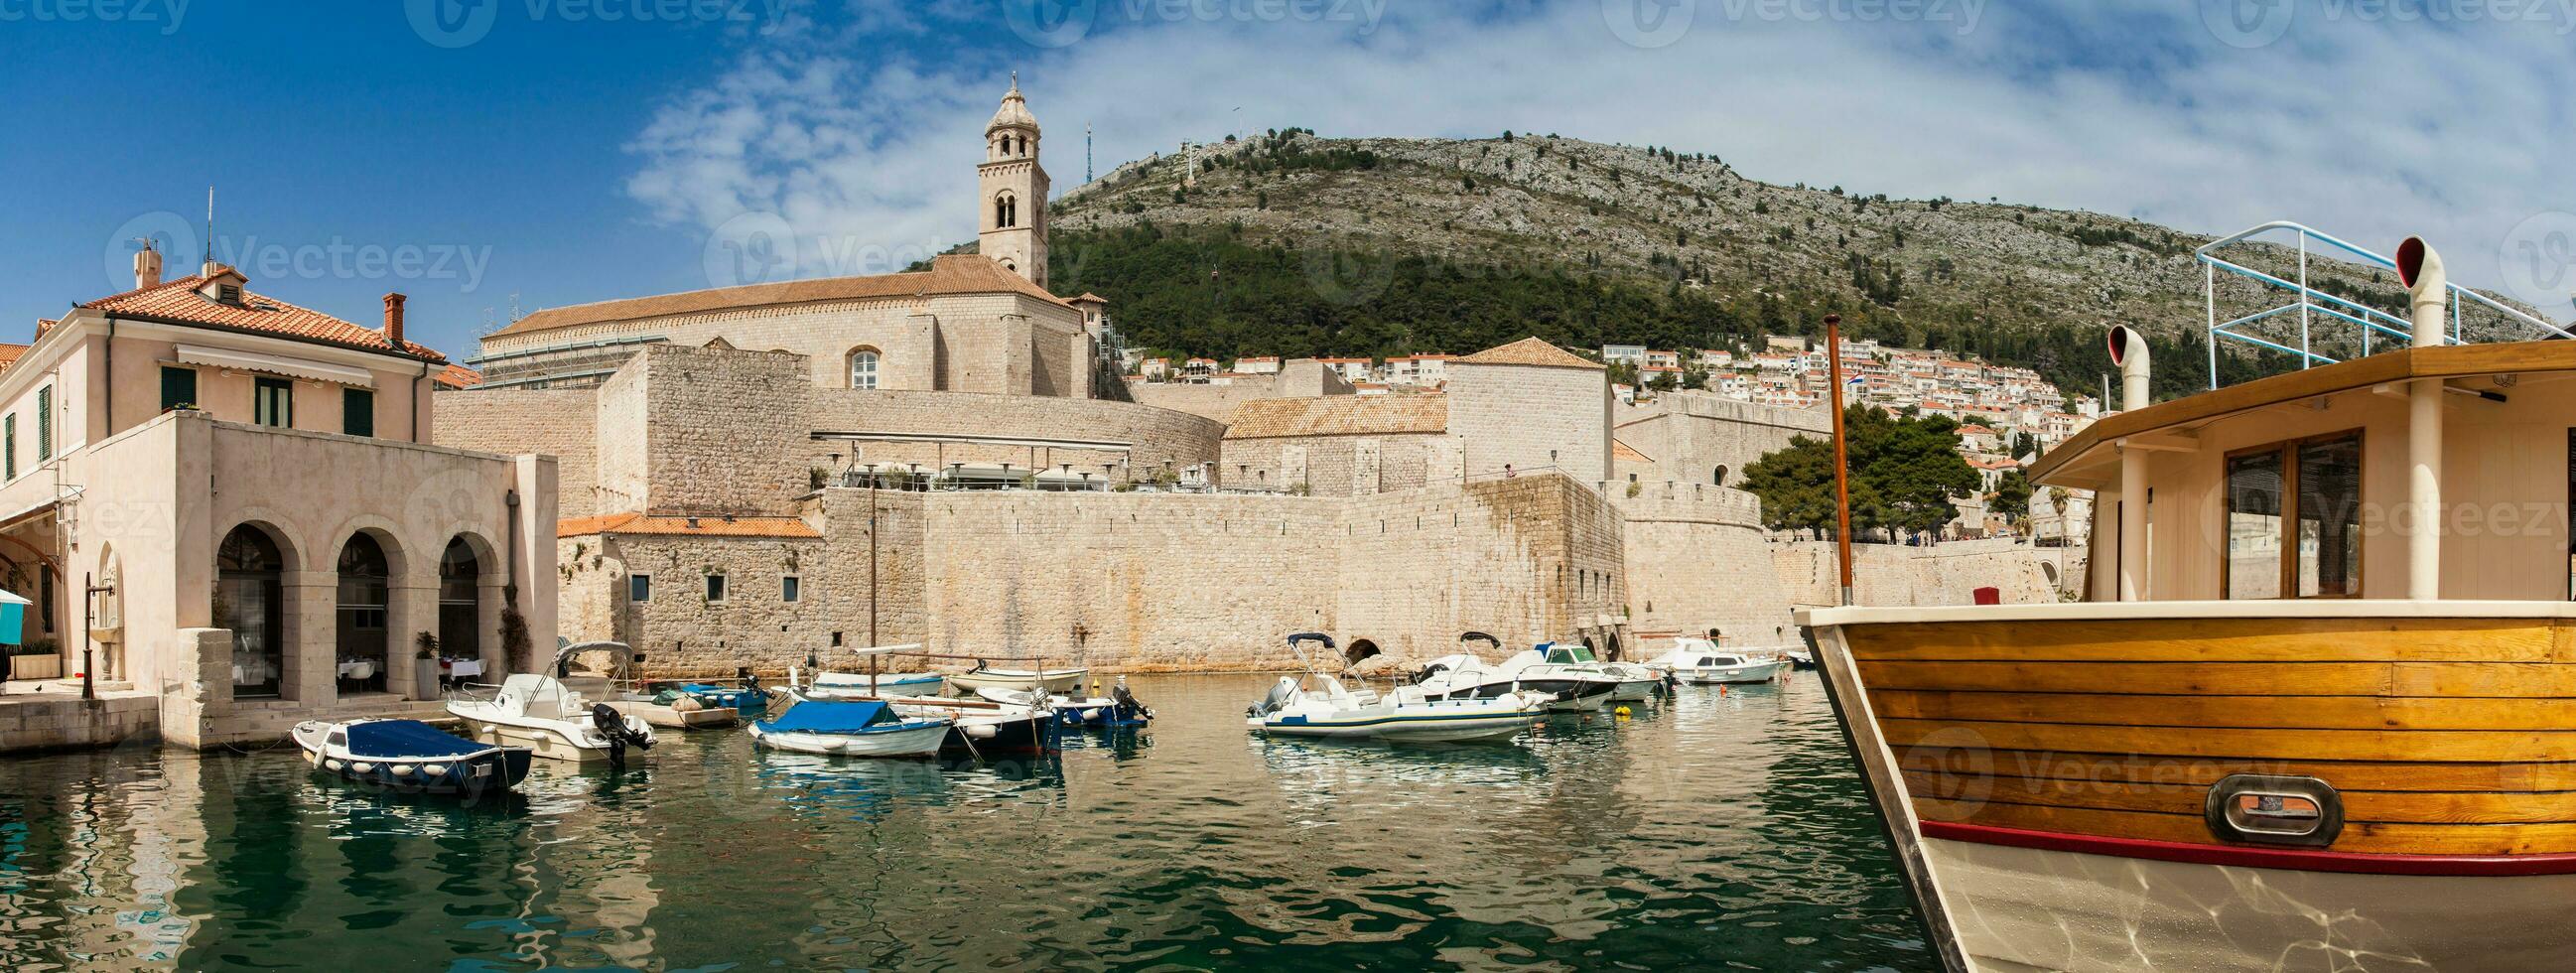 Dubrovnik ciudad antiguo Puerto fortificaciones y montar srd foto